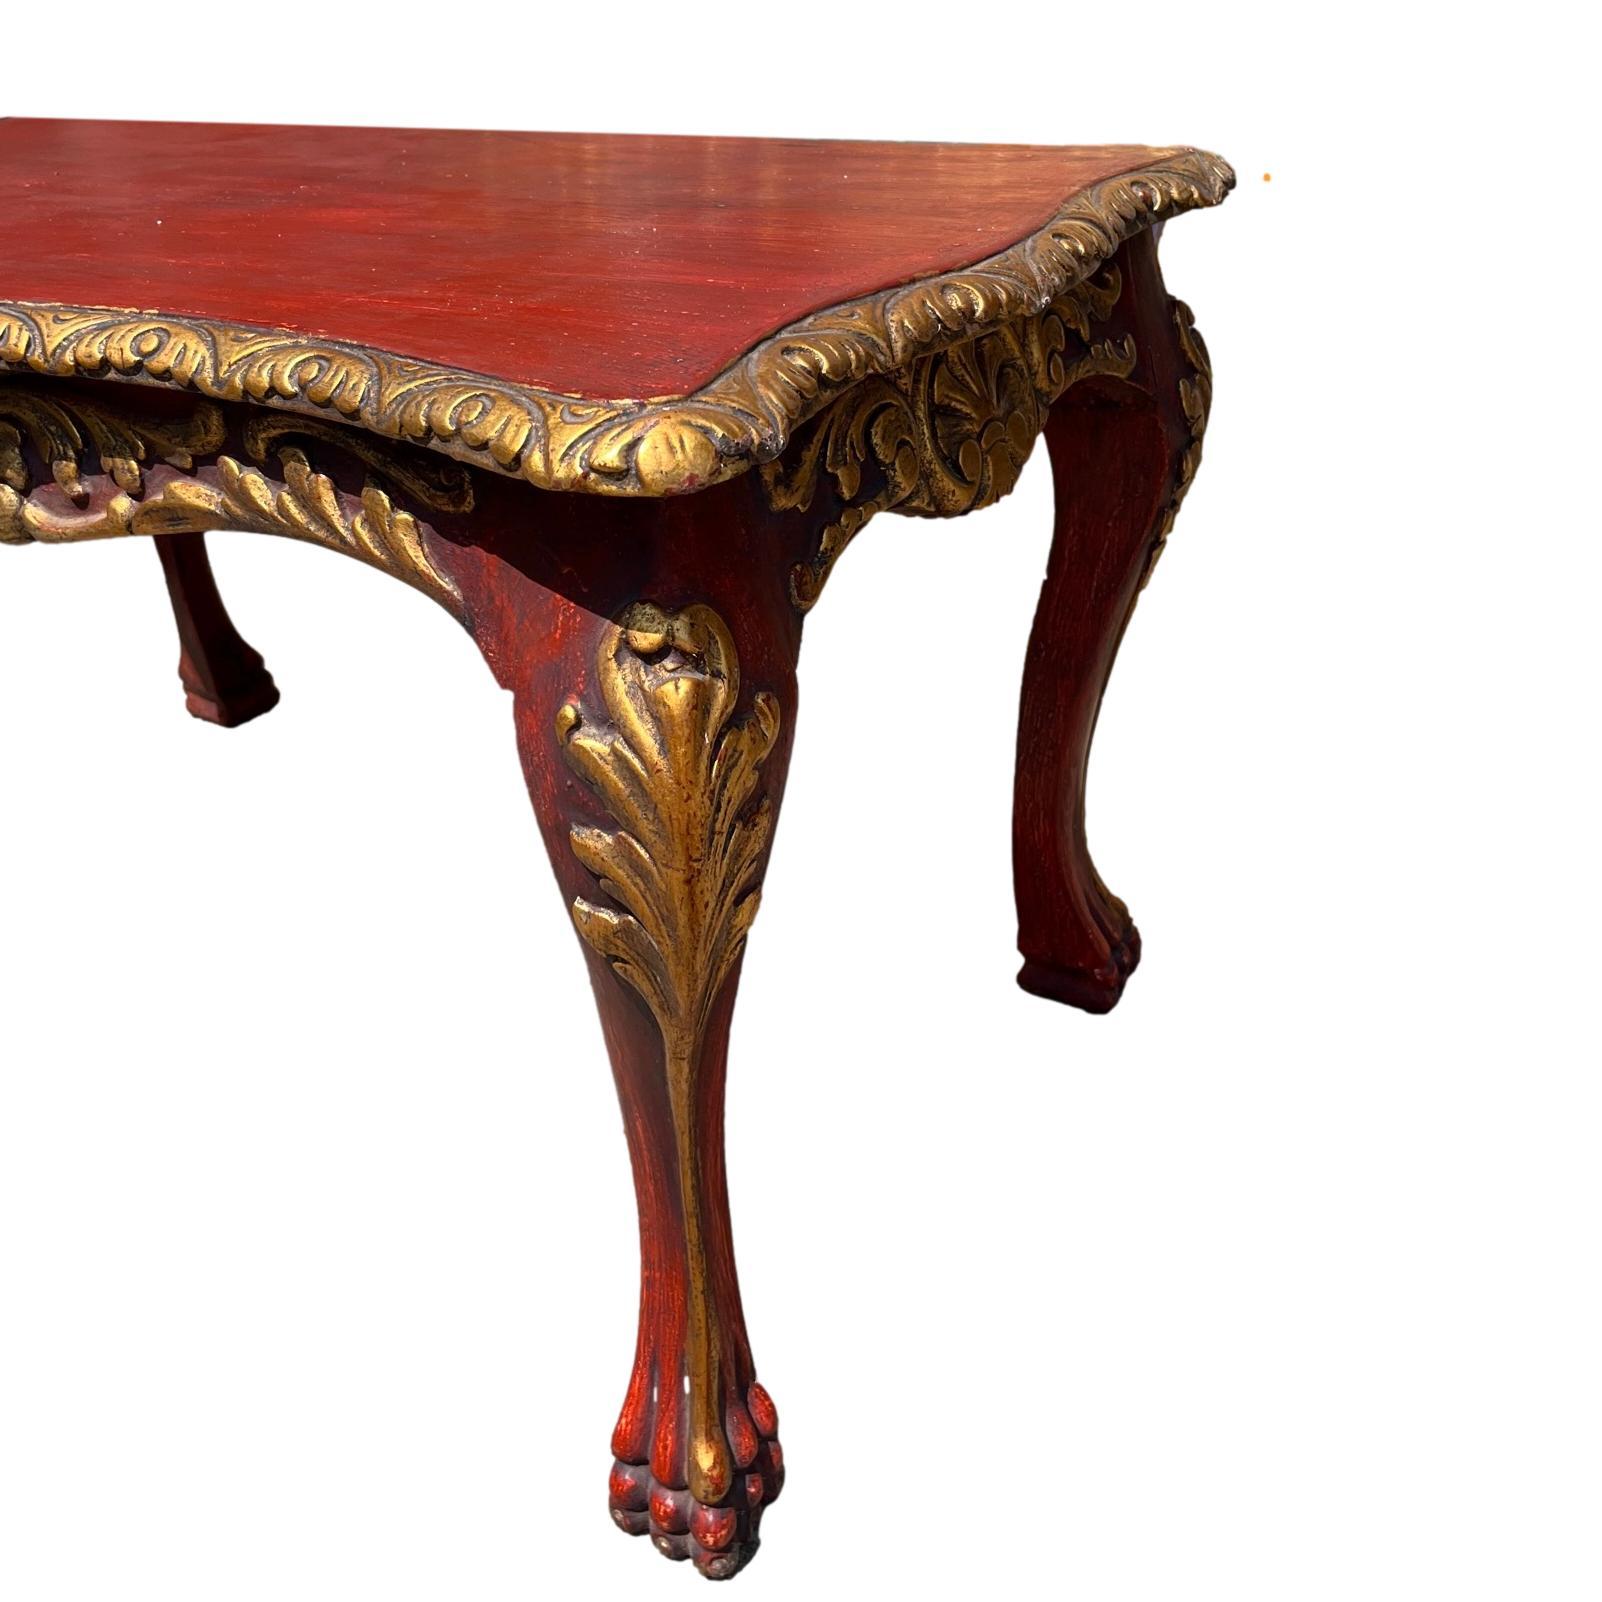 Ein bemalter und vergoldeter venezianischer Tisch aus den 1920er Jahren.

Abmessungen:
Länge: 31,5